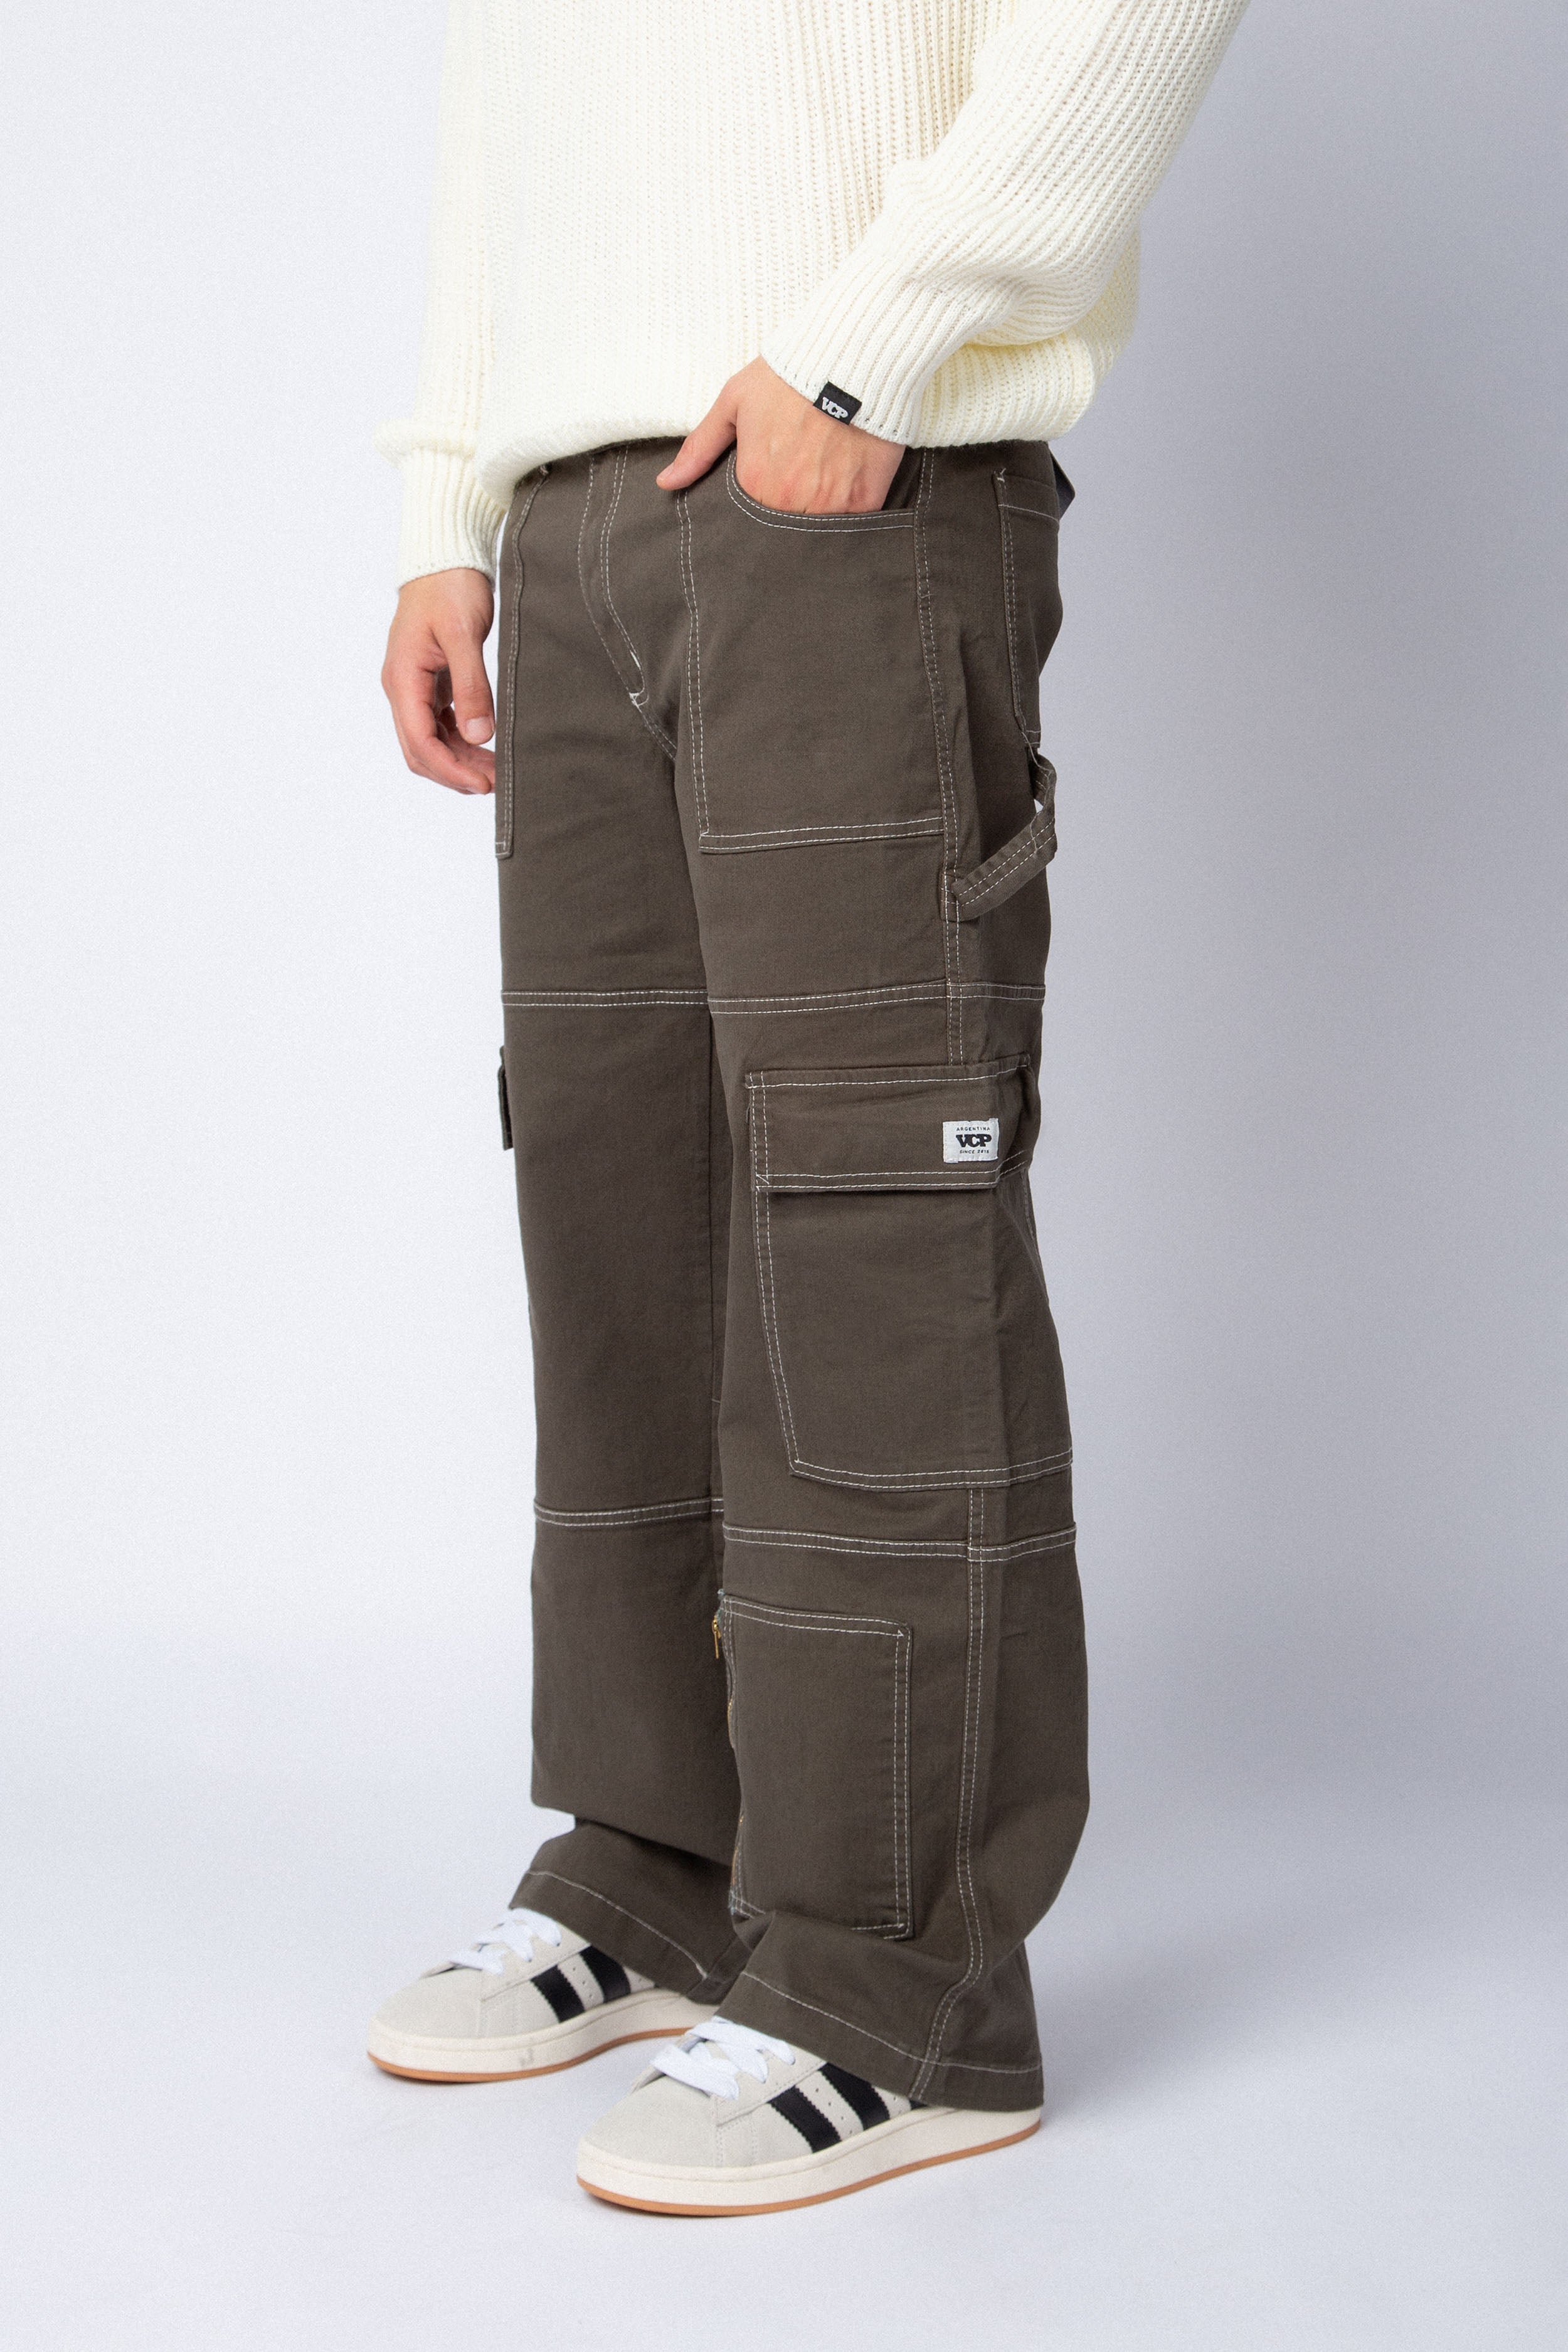 Pantalon Carpintero Bronco Militar